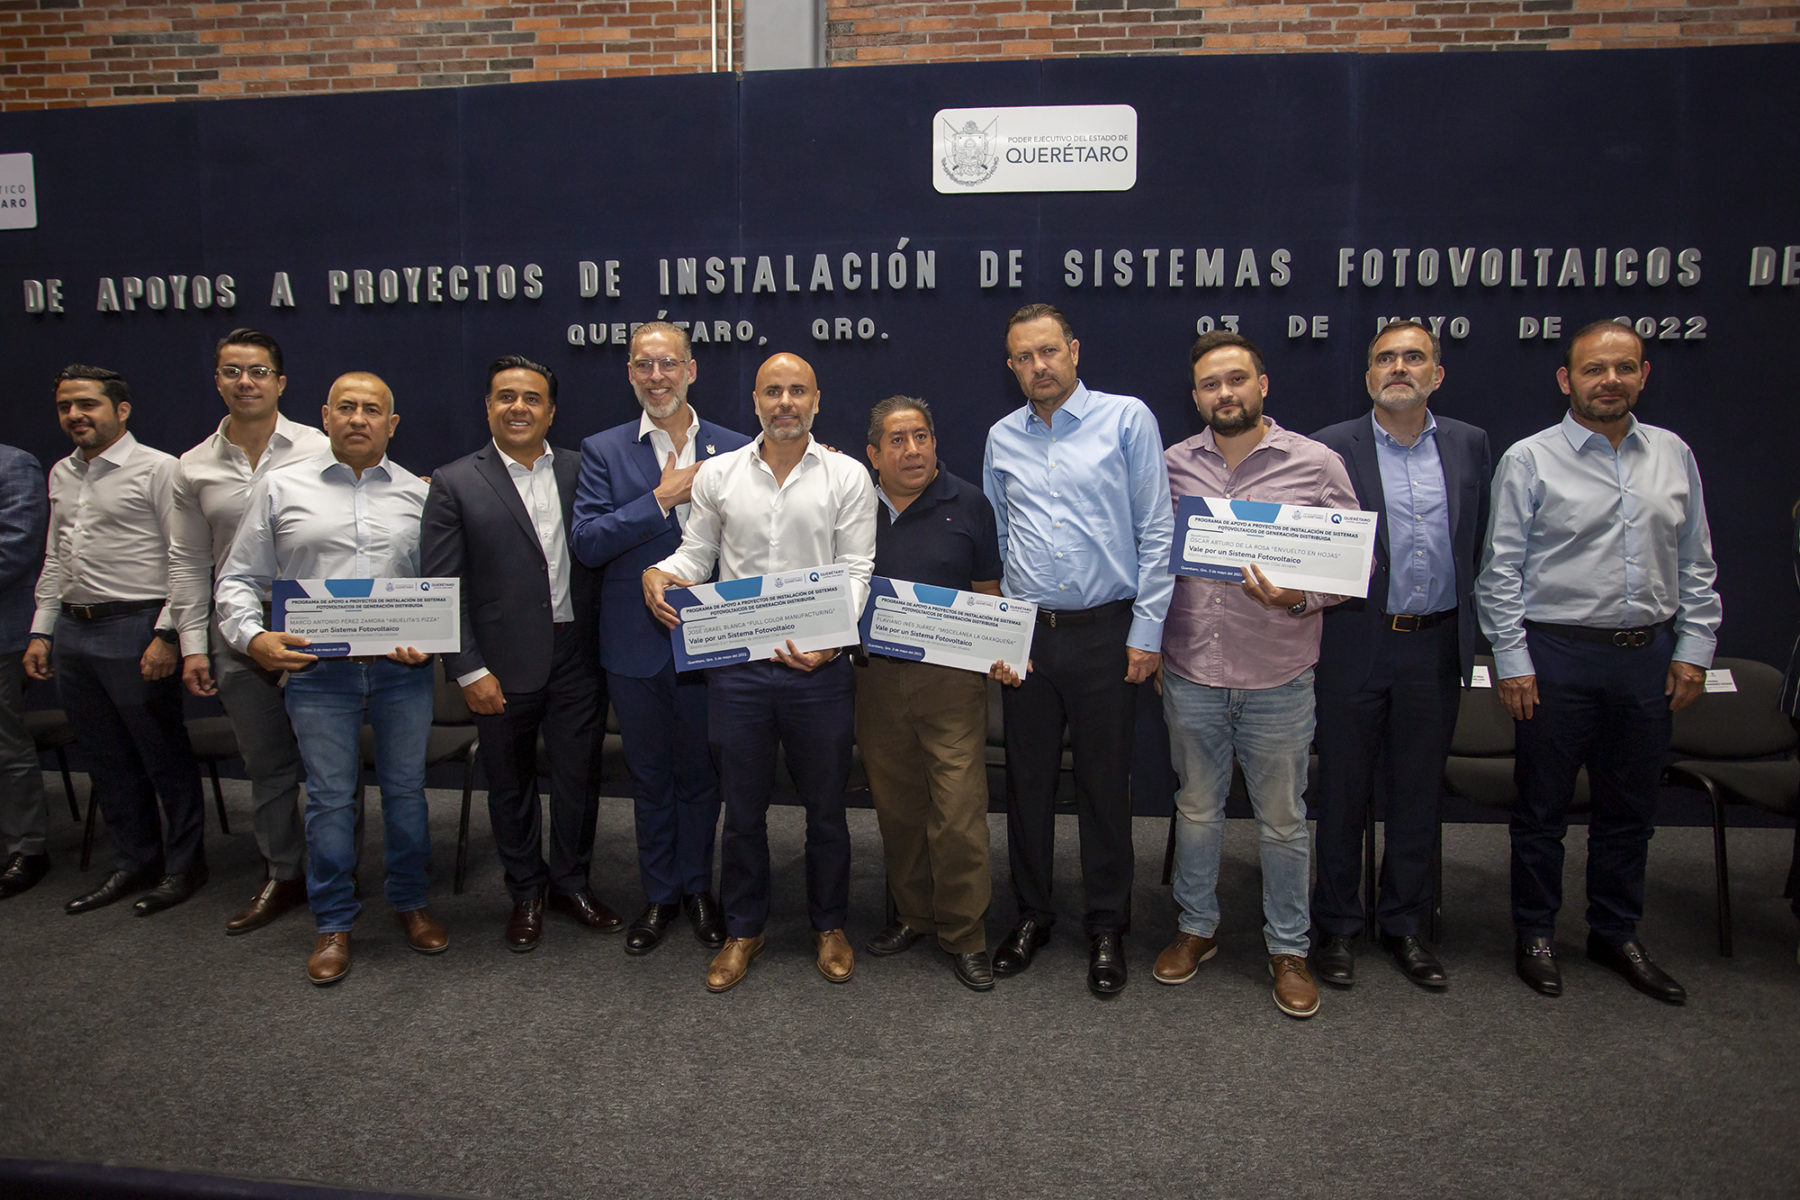 Proyecto que se realiza en conjunto con el Clúster Energético de Querétaro beneficia a 100 microempresas con sistemas fotovoltaicos instalados y en funcionamiento. (Especial)